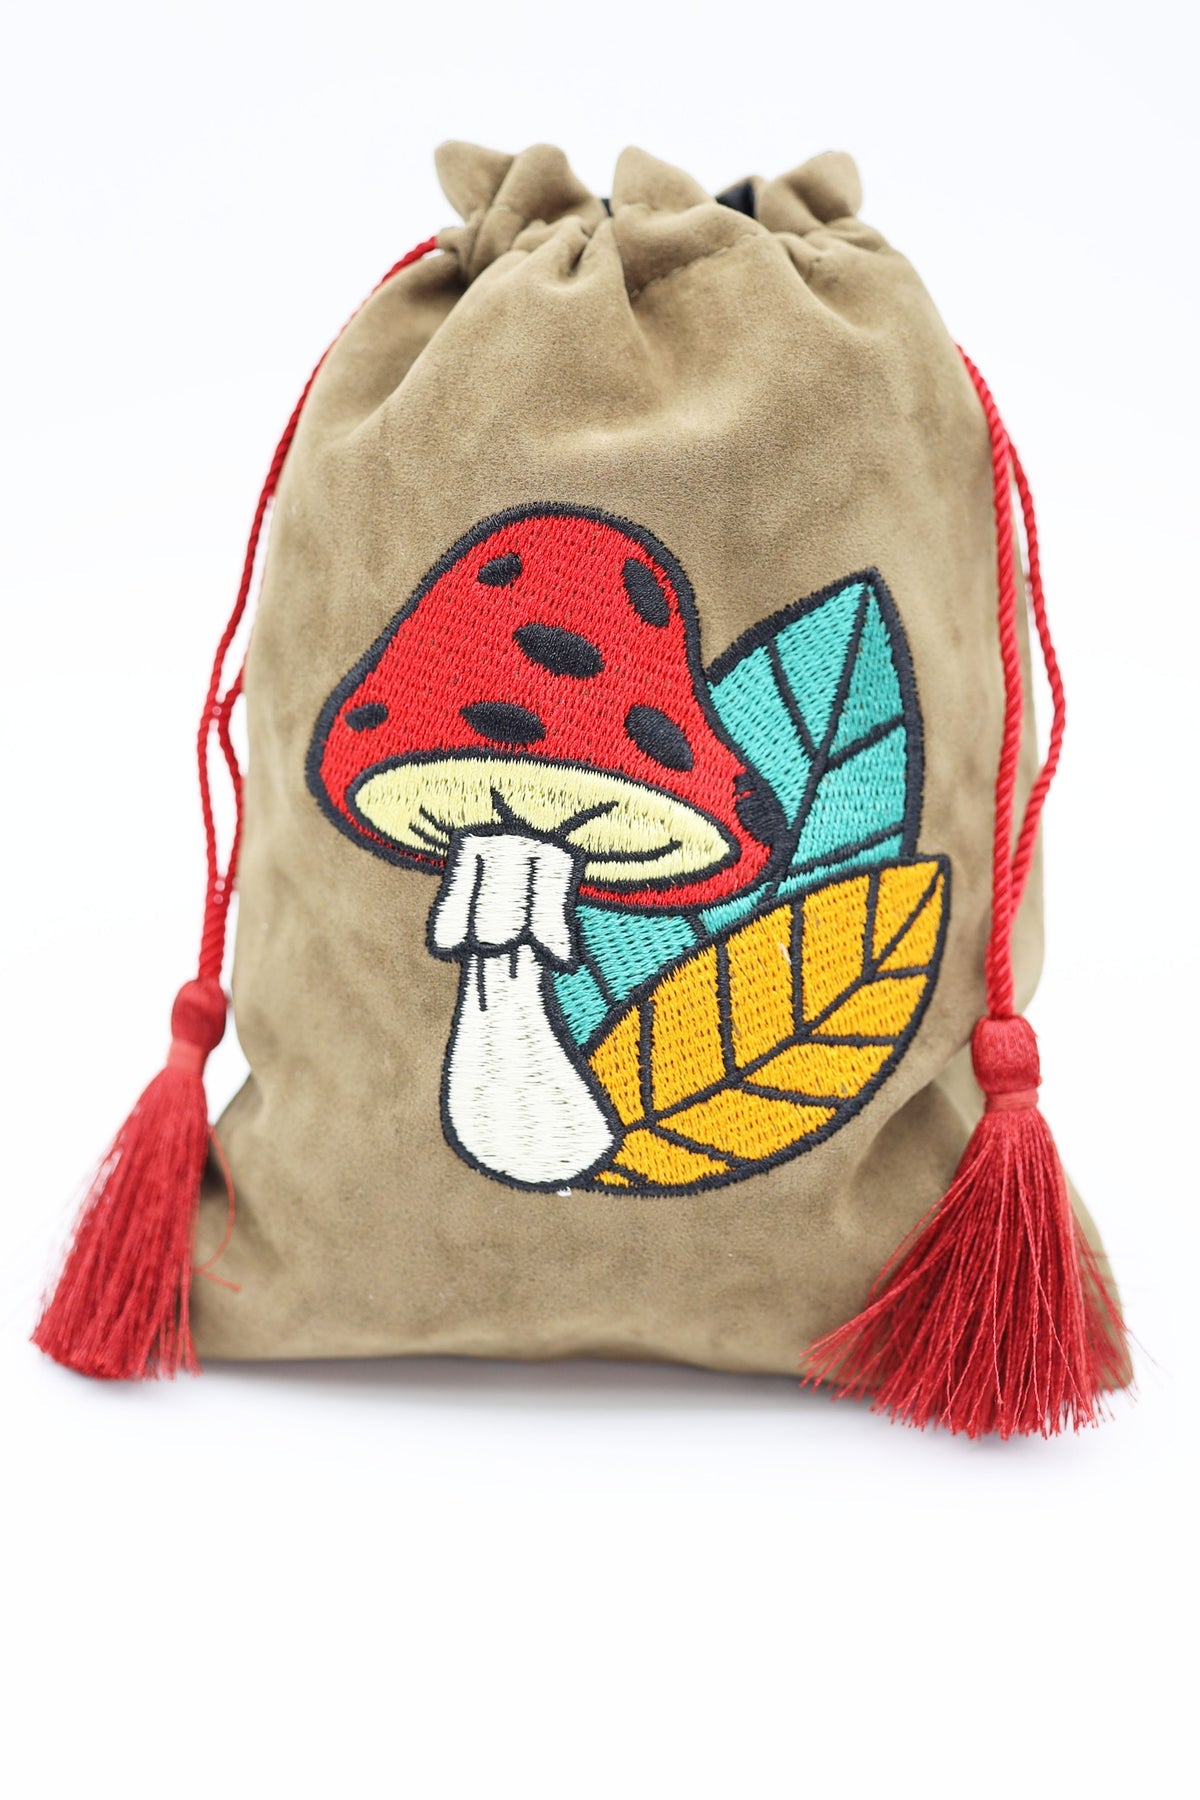 Mushroom & Leaf Dice Bag